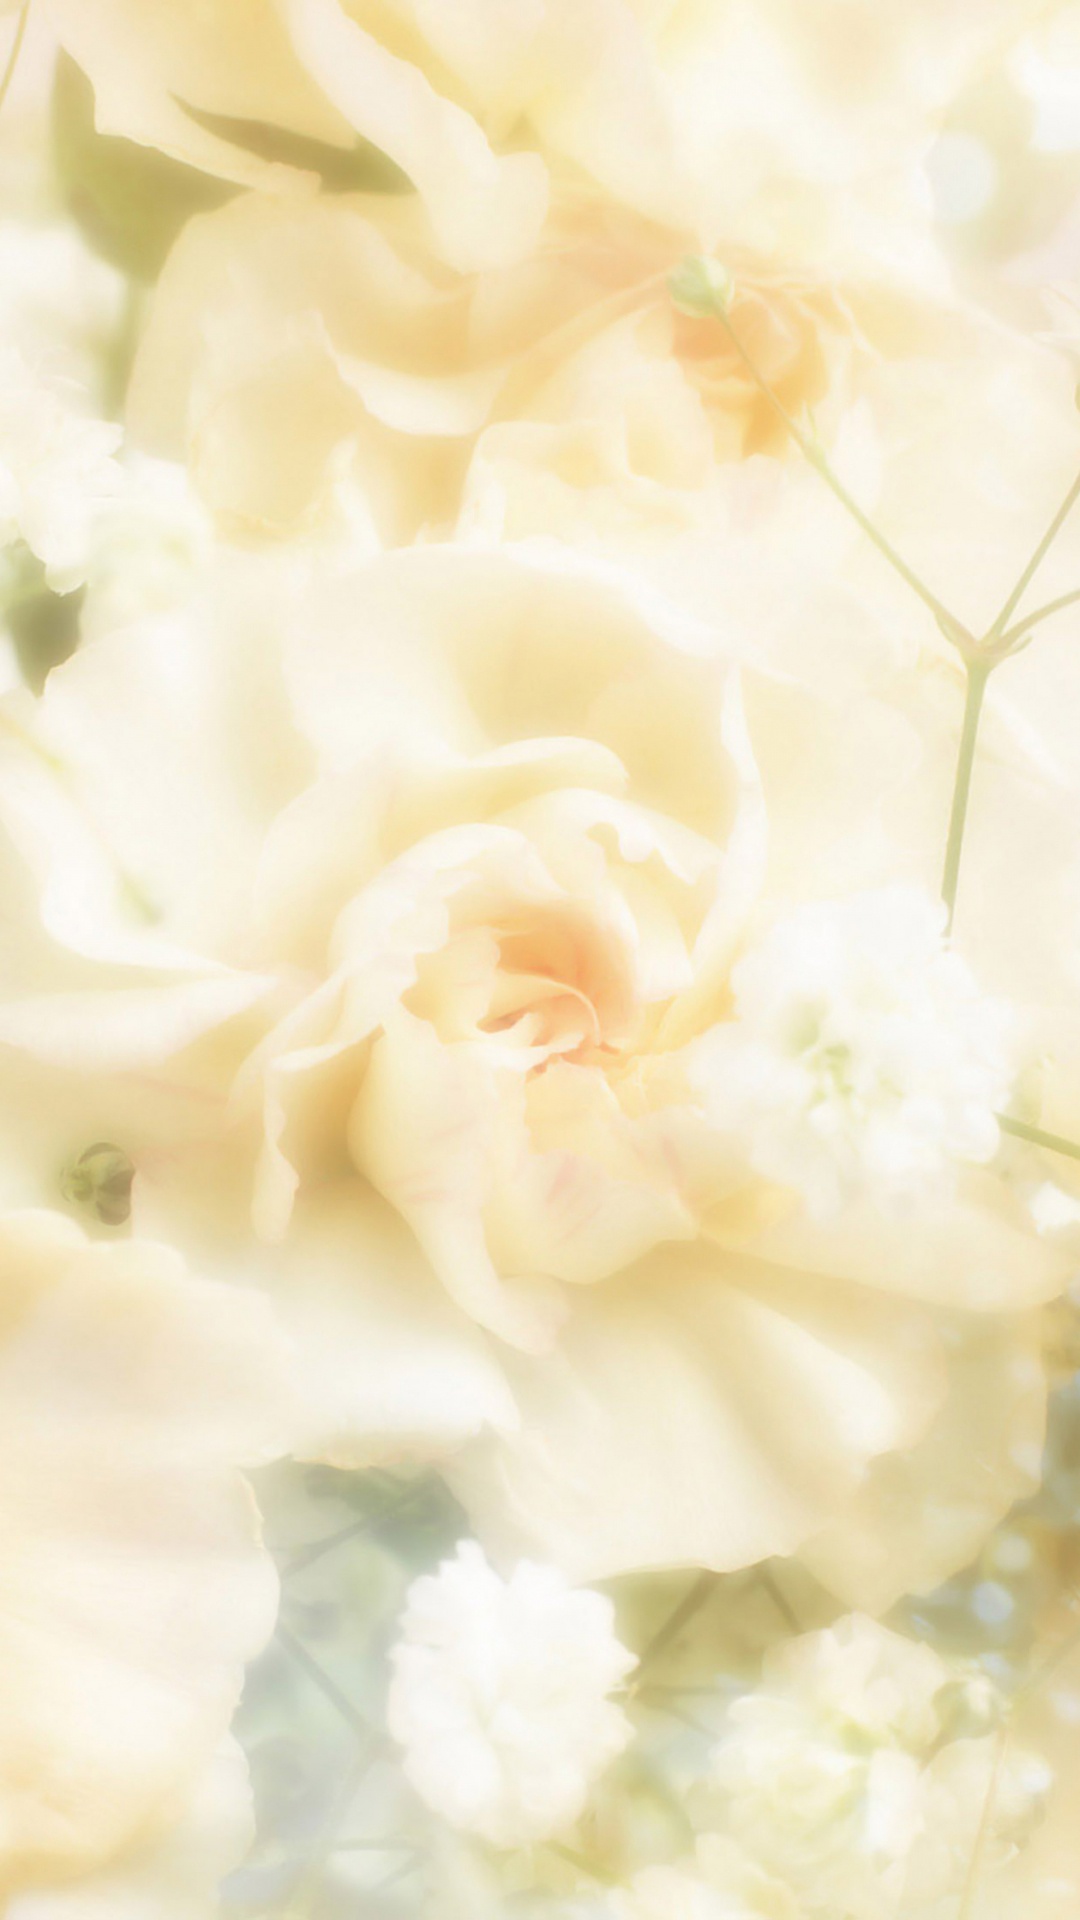 Flor Blanca en Fotografía de Cerca. Wallpaper in 1080x1920 Resolution